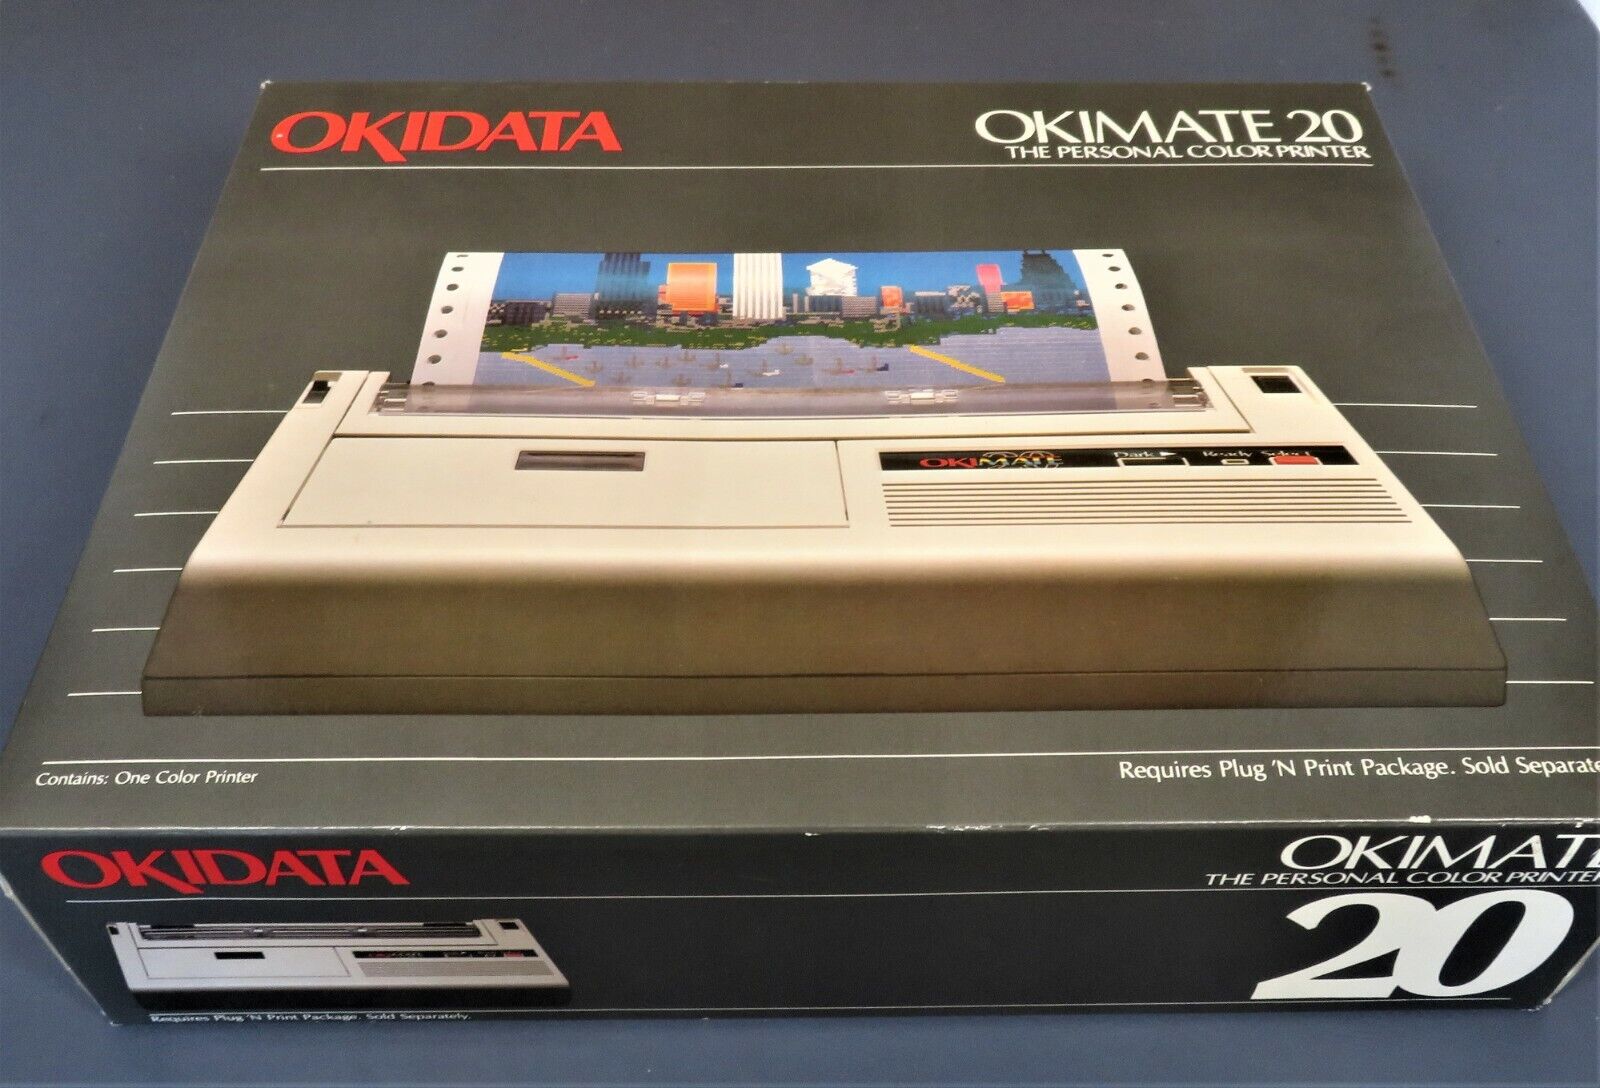 Vintage OKIMATE 20 COLOR PRINTER 1985 Commodore Atari BRAND NEW NIB Okidata